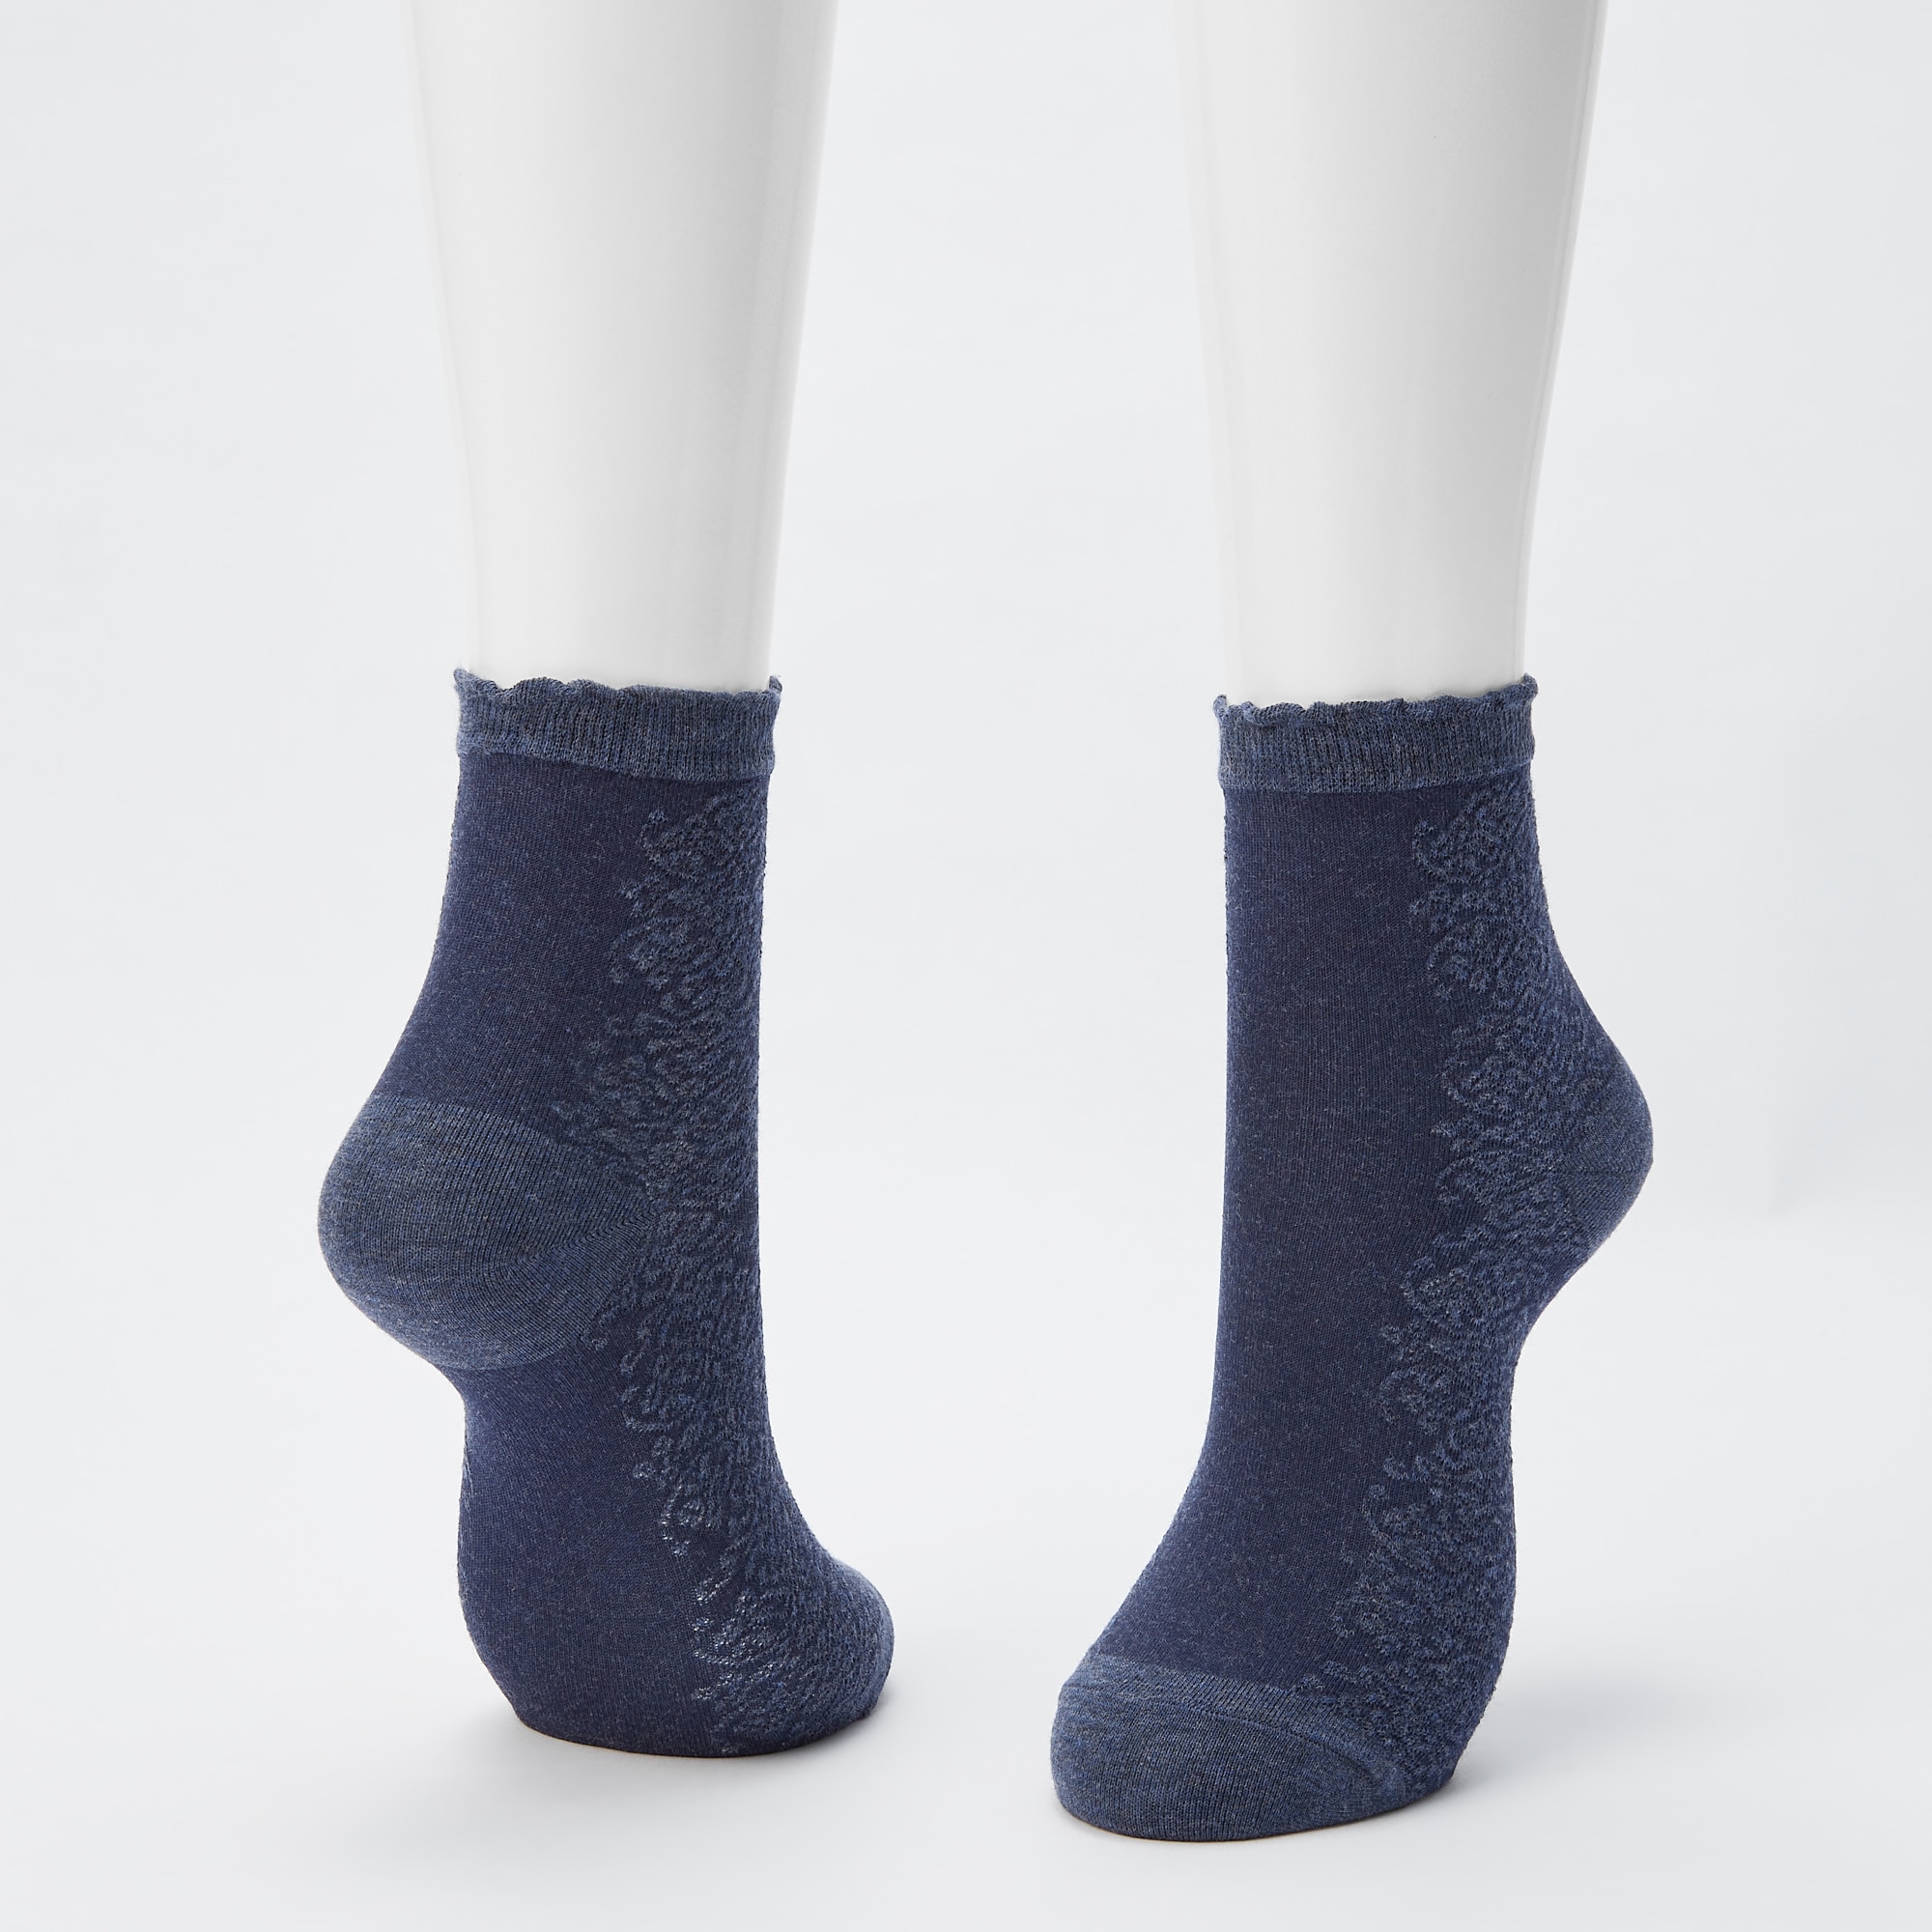 SOCKSHOP Iomi Footnurse Mens and Ladies Diabetic Ankle Socks Pack of 3 